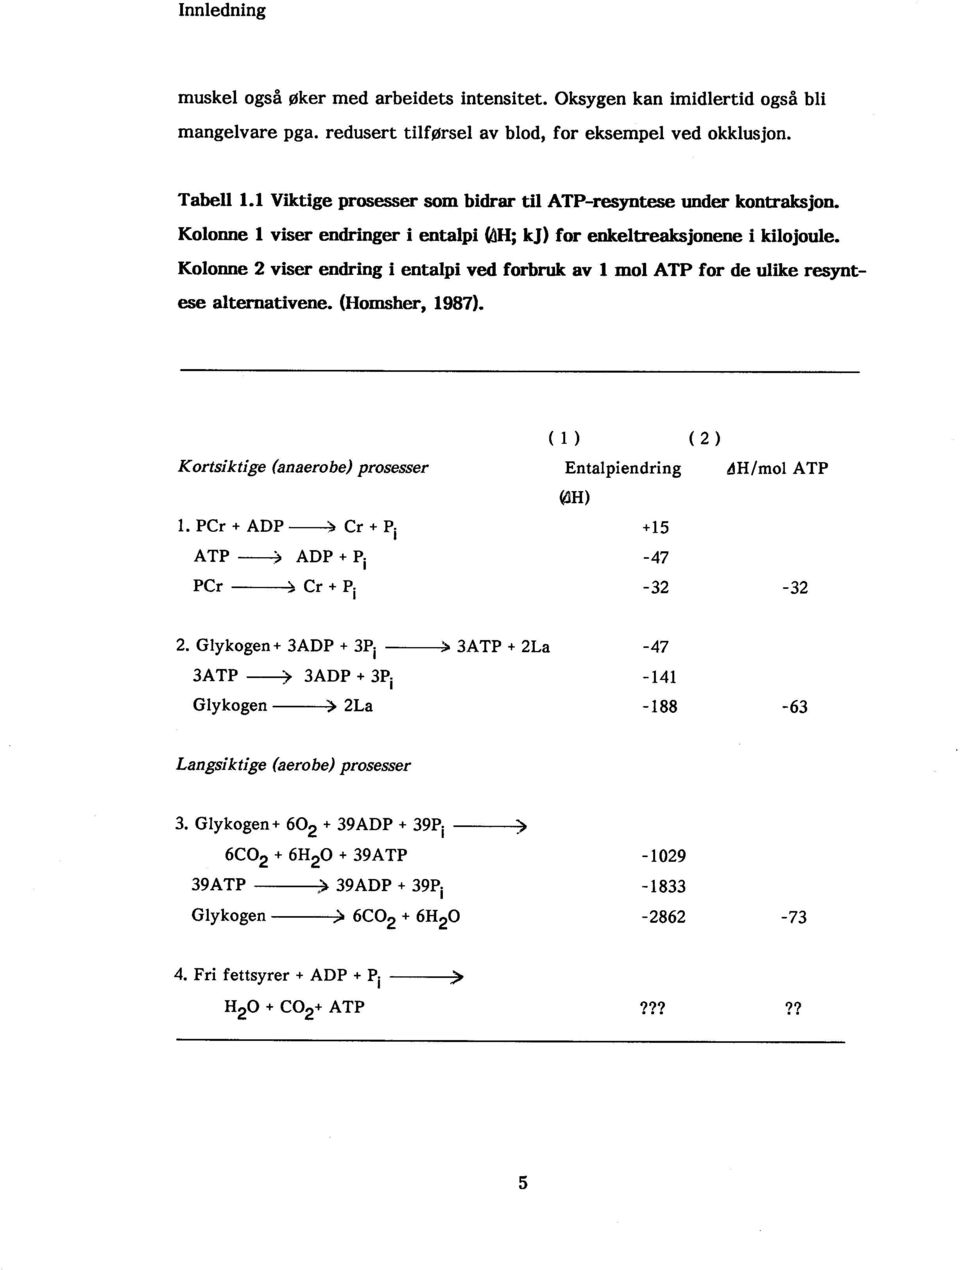 Kolonne 2 viser endring i entalpi ved forbru av L mol ATP for de ulike resyntes alterativene. (Homsher, 1987). Kortsiktige (anaerobe) prosesser (1) (2) Entalpiendring l1h/mol A TP L.